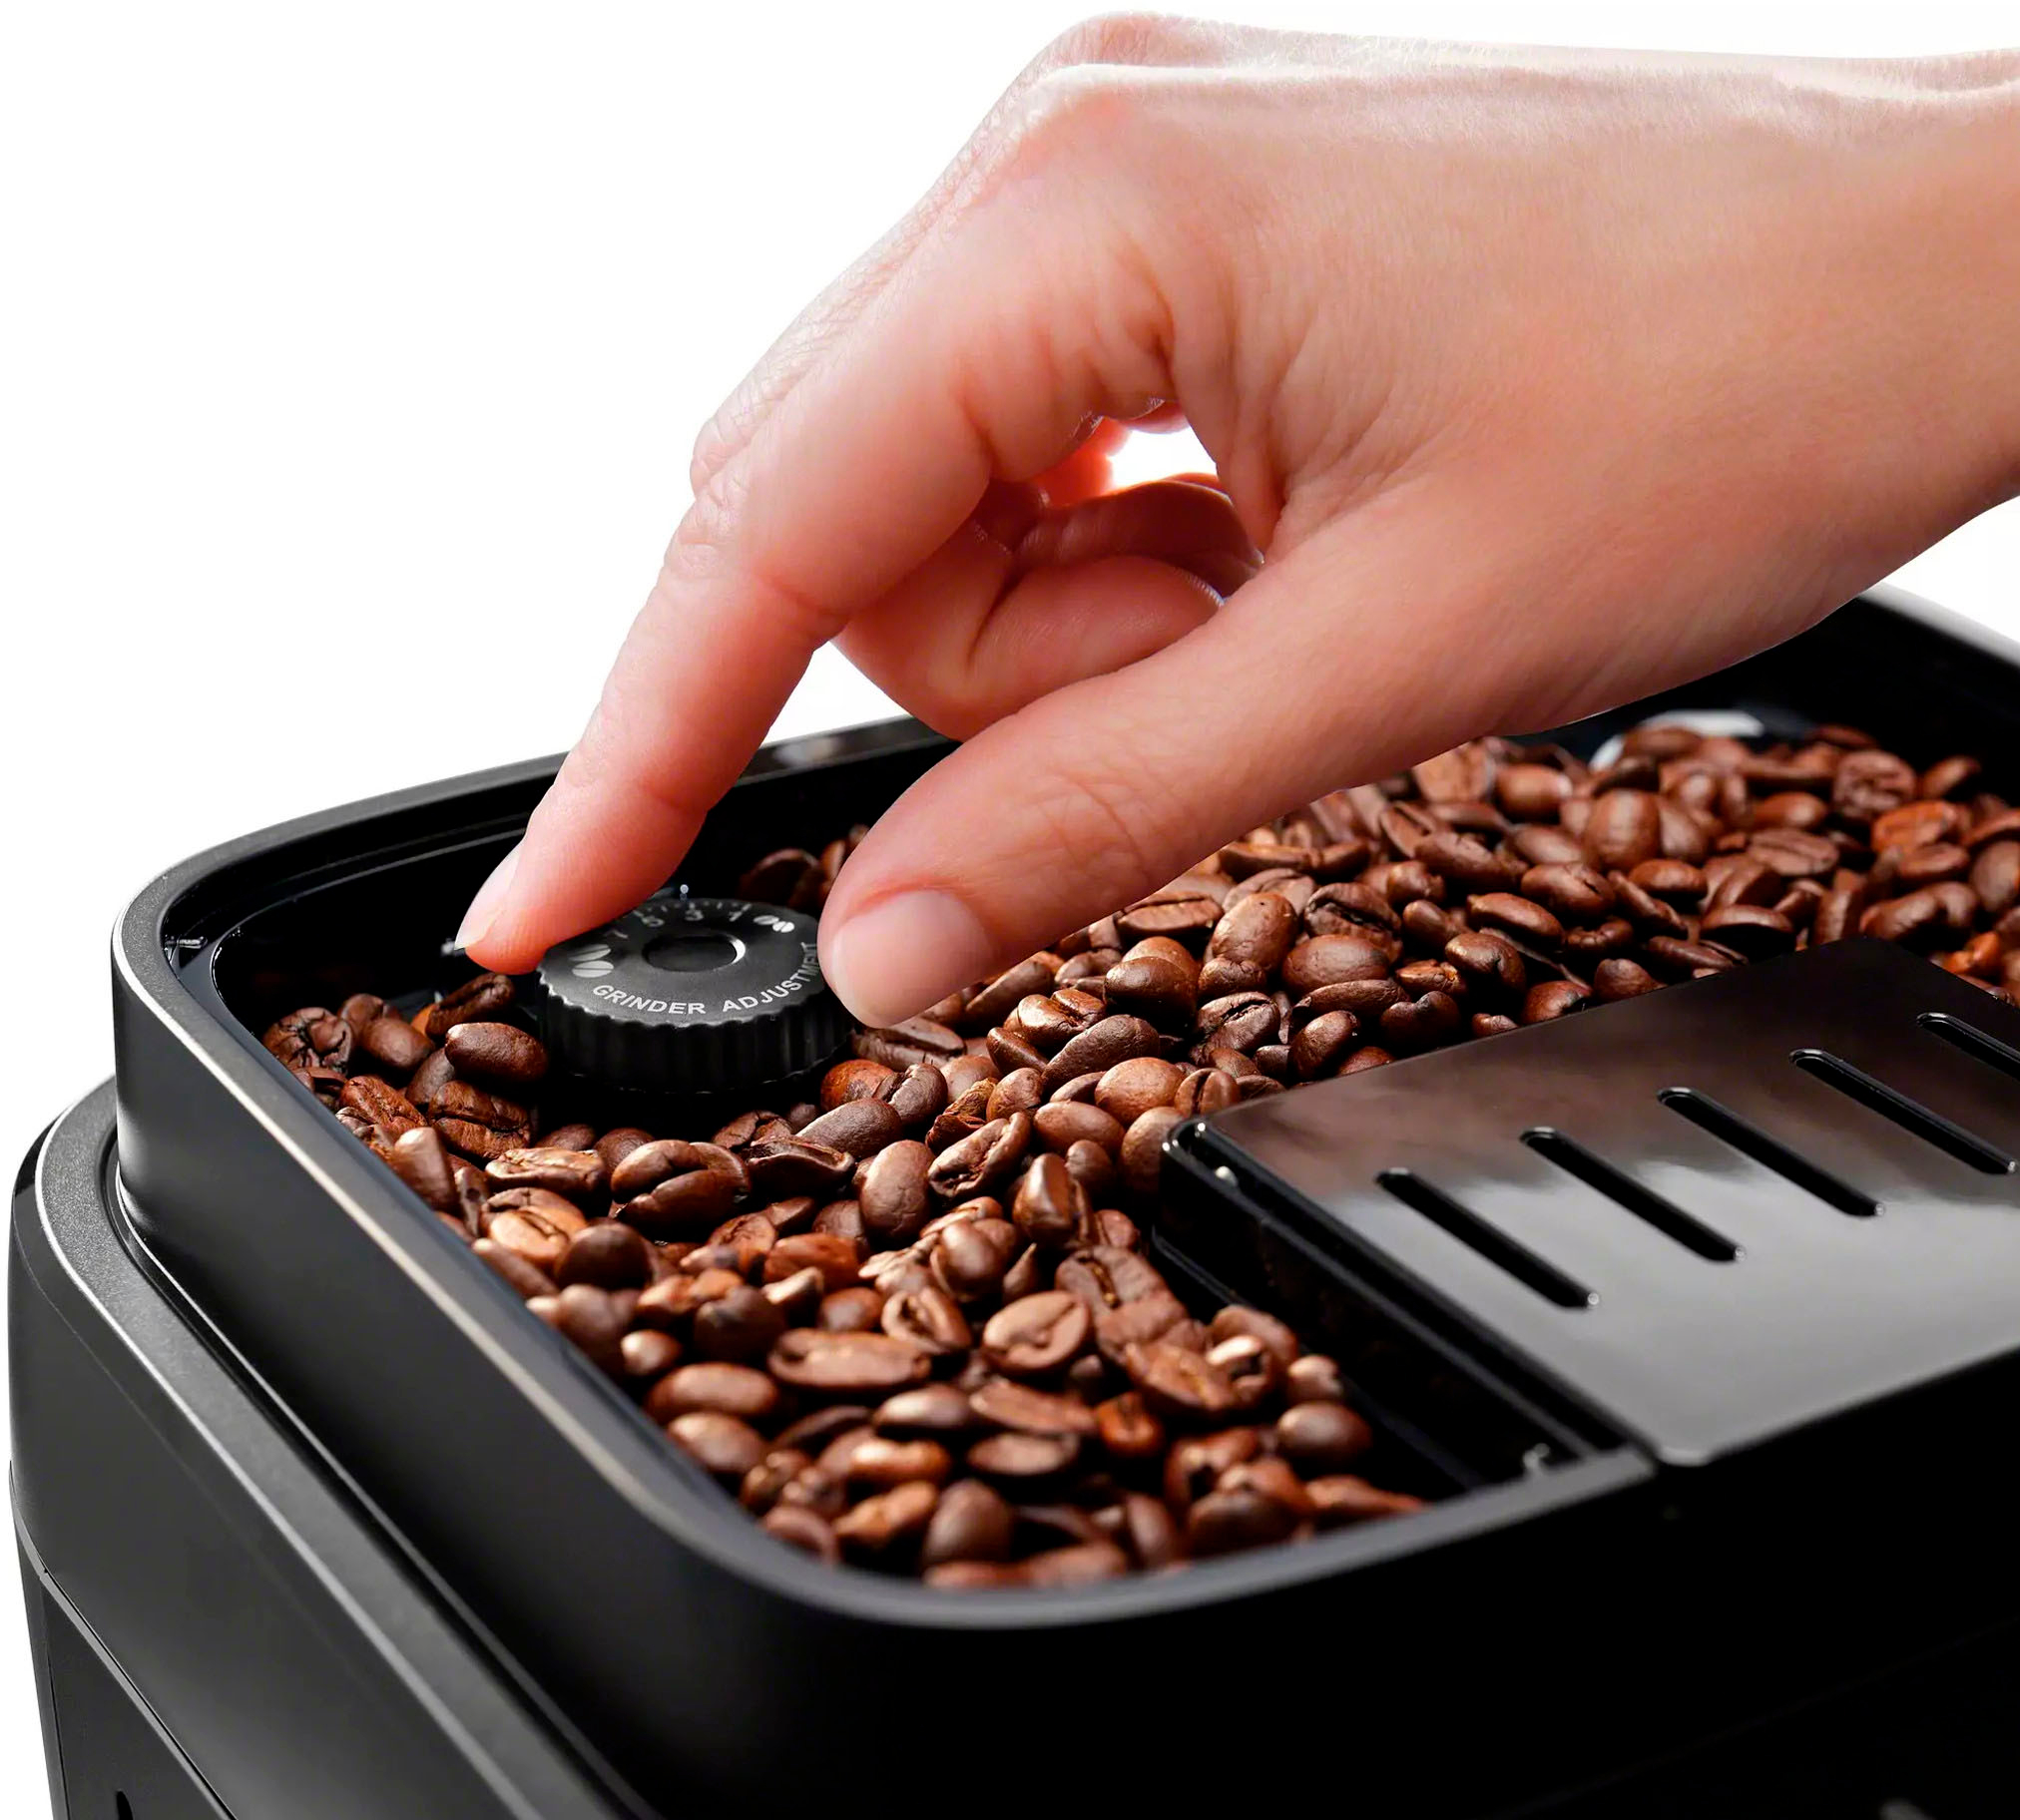 De’Longhi Magnifica ECAM290.22.B cafetera eléctrica Totalmente automática  Máquina espresso 1,8 L